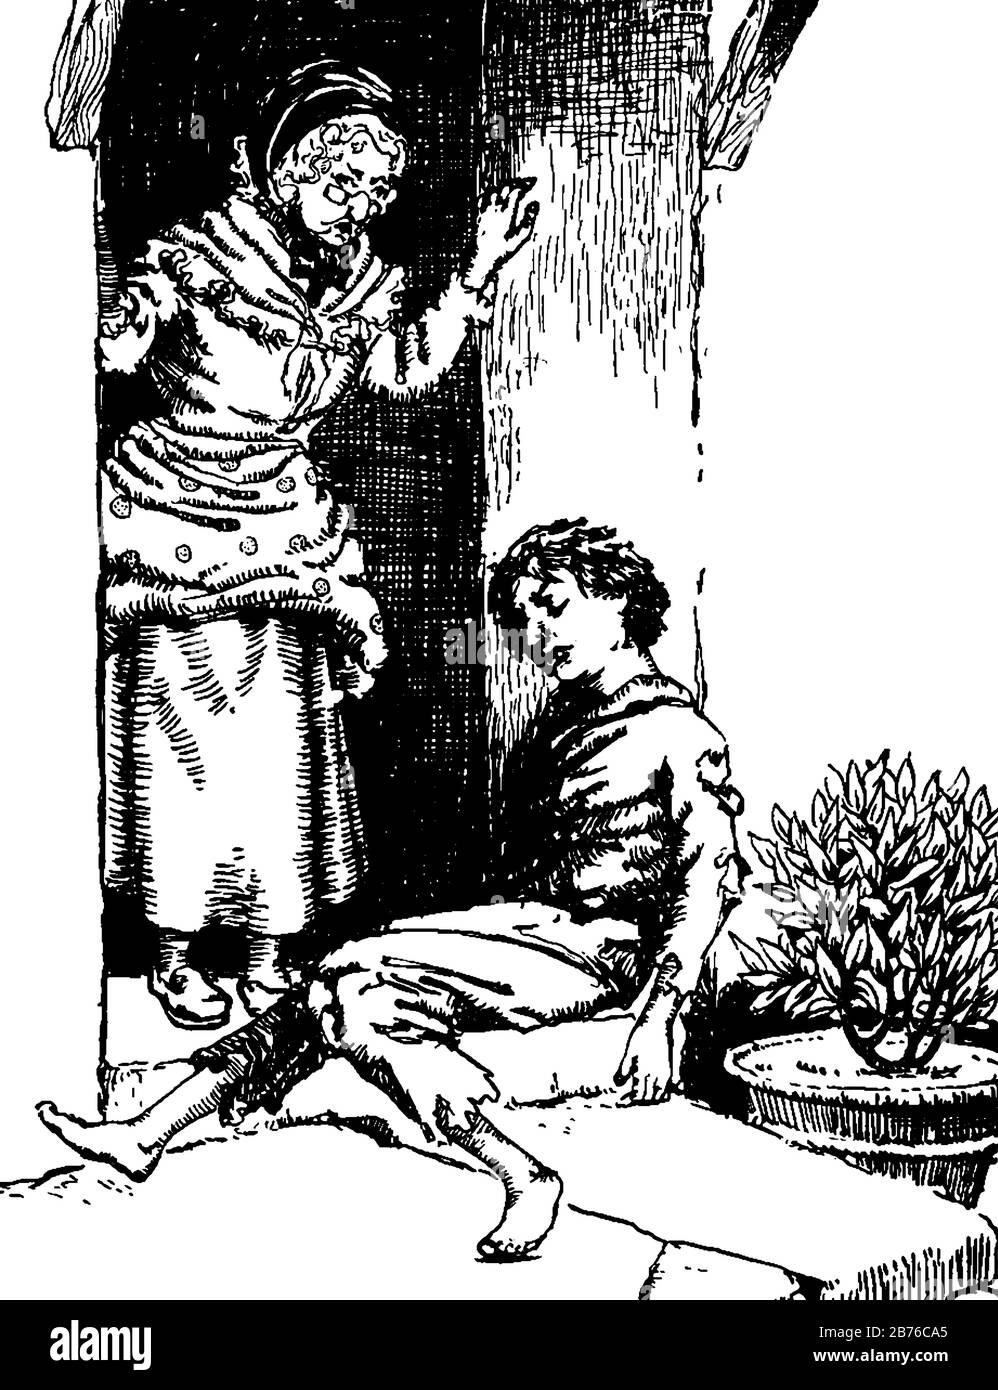 Un garçon assis à la porte et une vieille femme debout près de lui, plante en pot près de lui, dessin vintage de ligne ou illustration de gravure Illustration de Vecteur